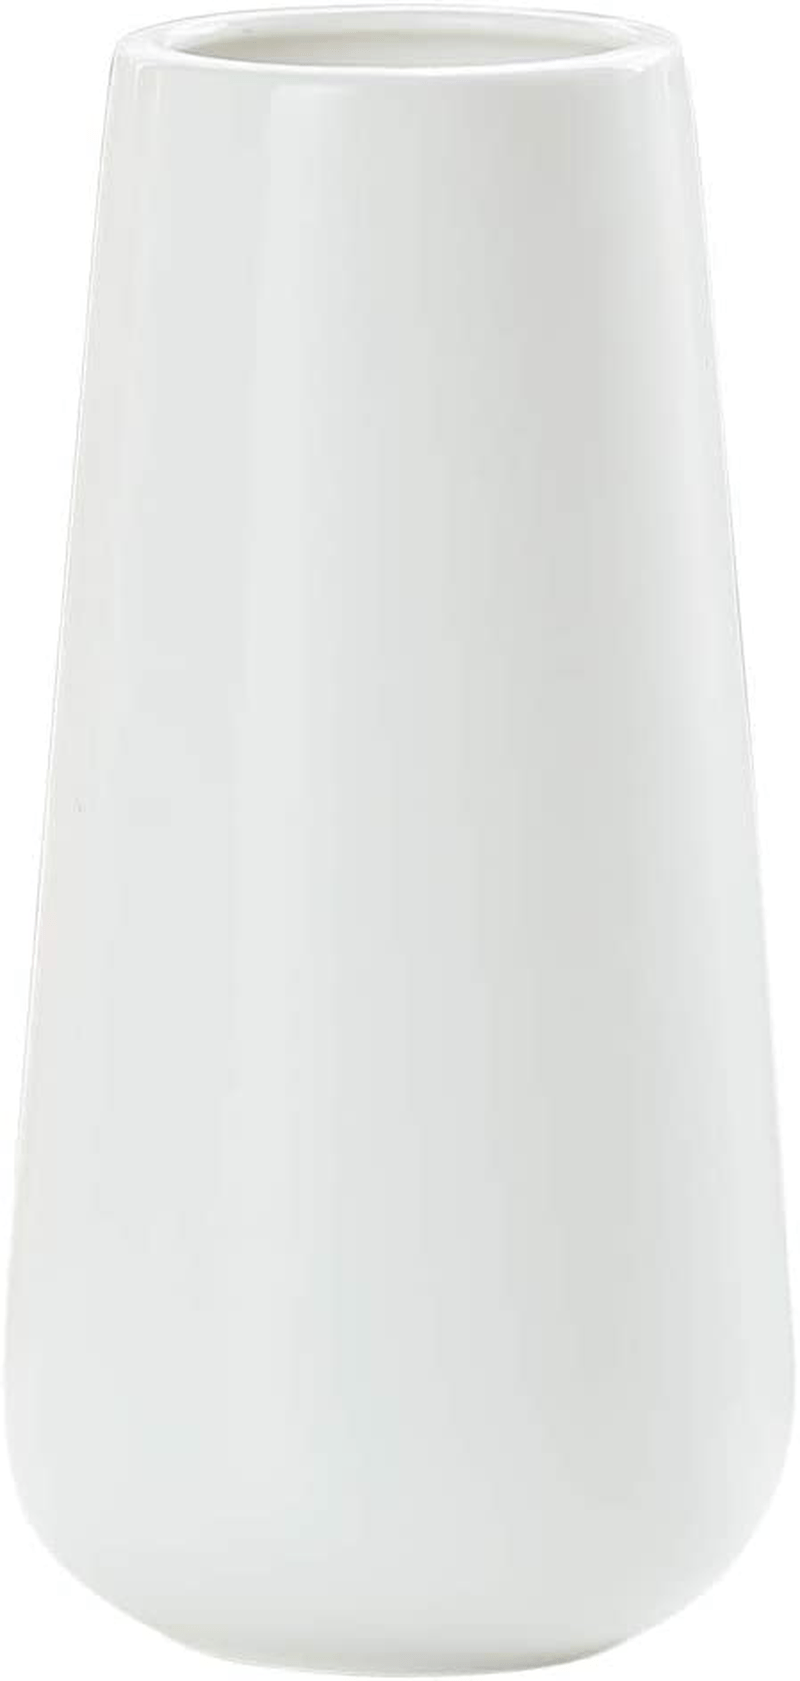 11 Inch Matte White Ceramic Flower Vase for Home Décor, Design Box Package, VS-MAT-W-11 Home & Garden > Decor > Vases D'vine Dev Matte White 8 Inch 